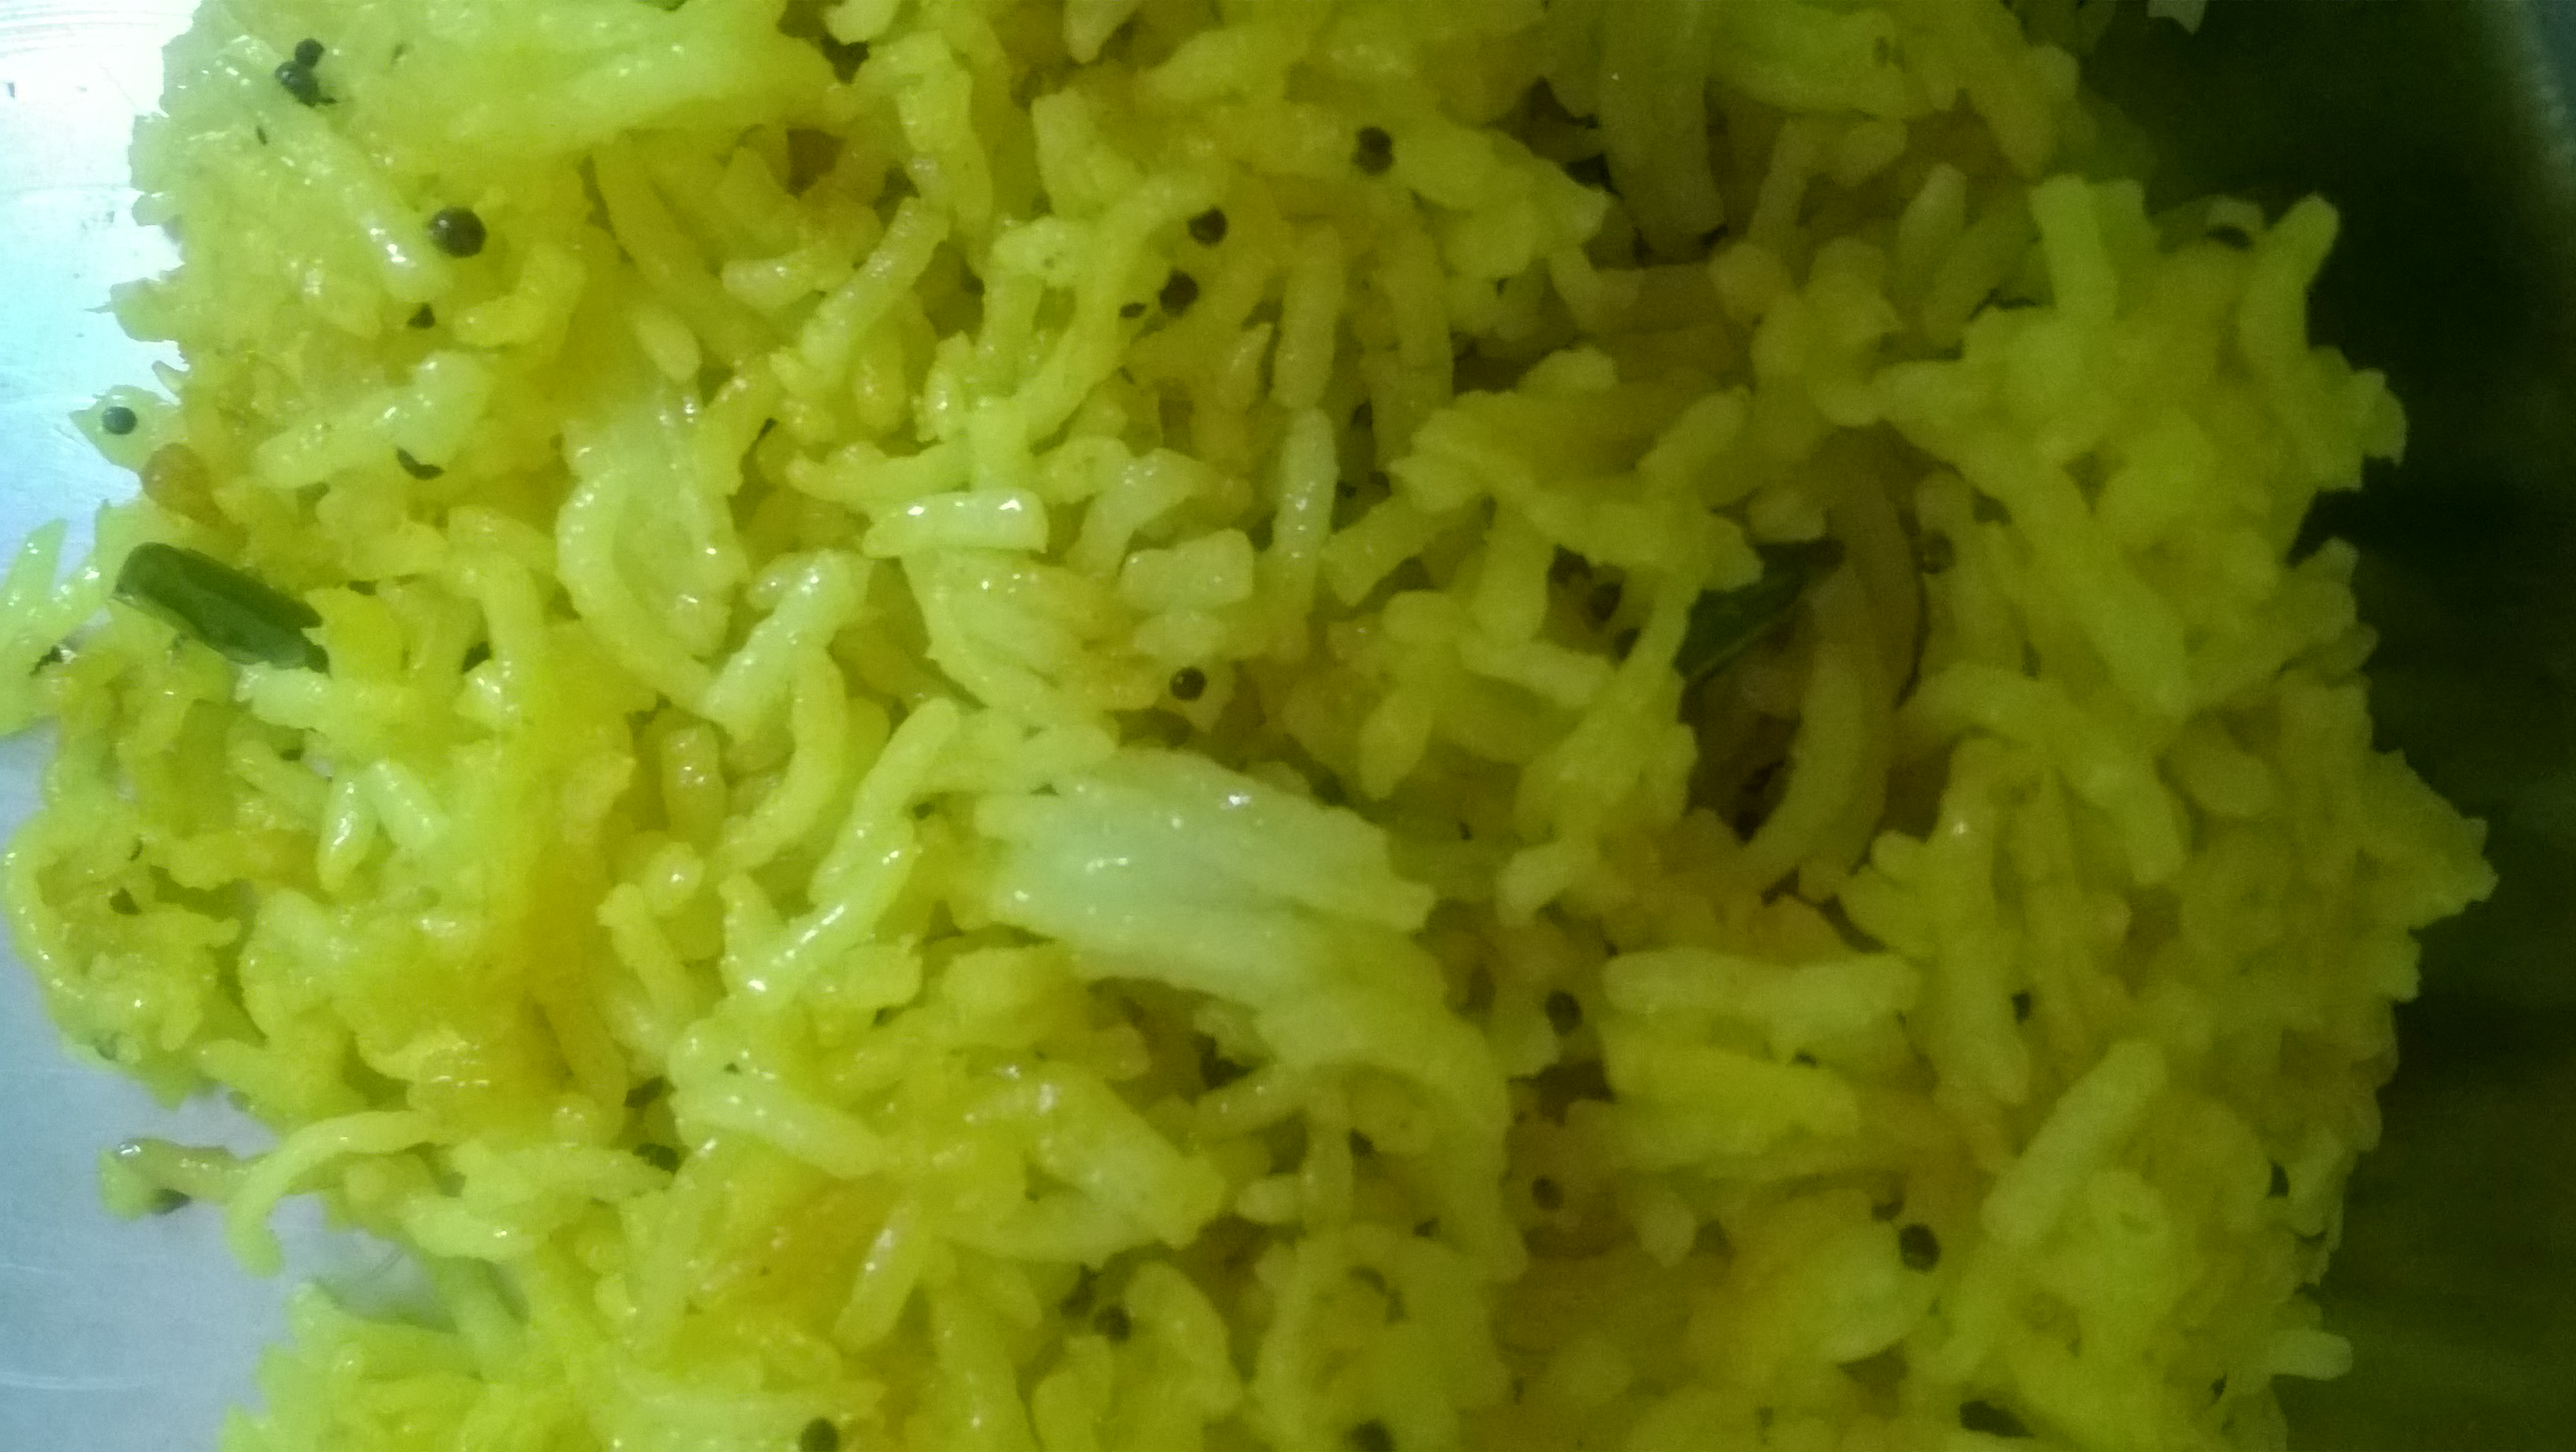 Masala rice